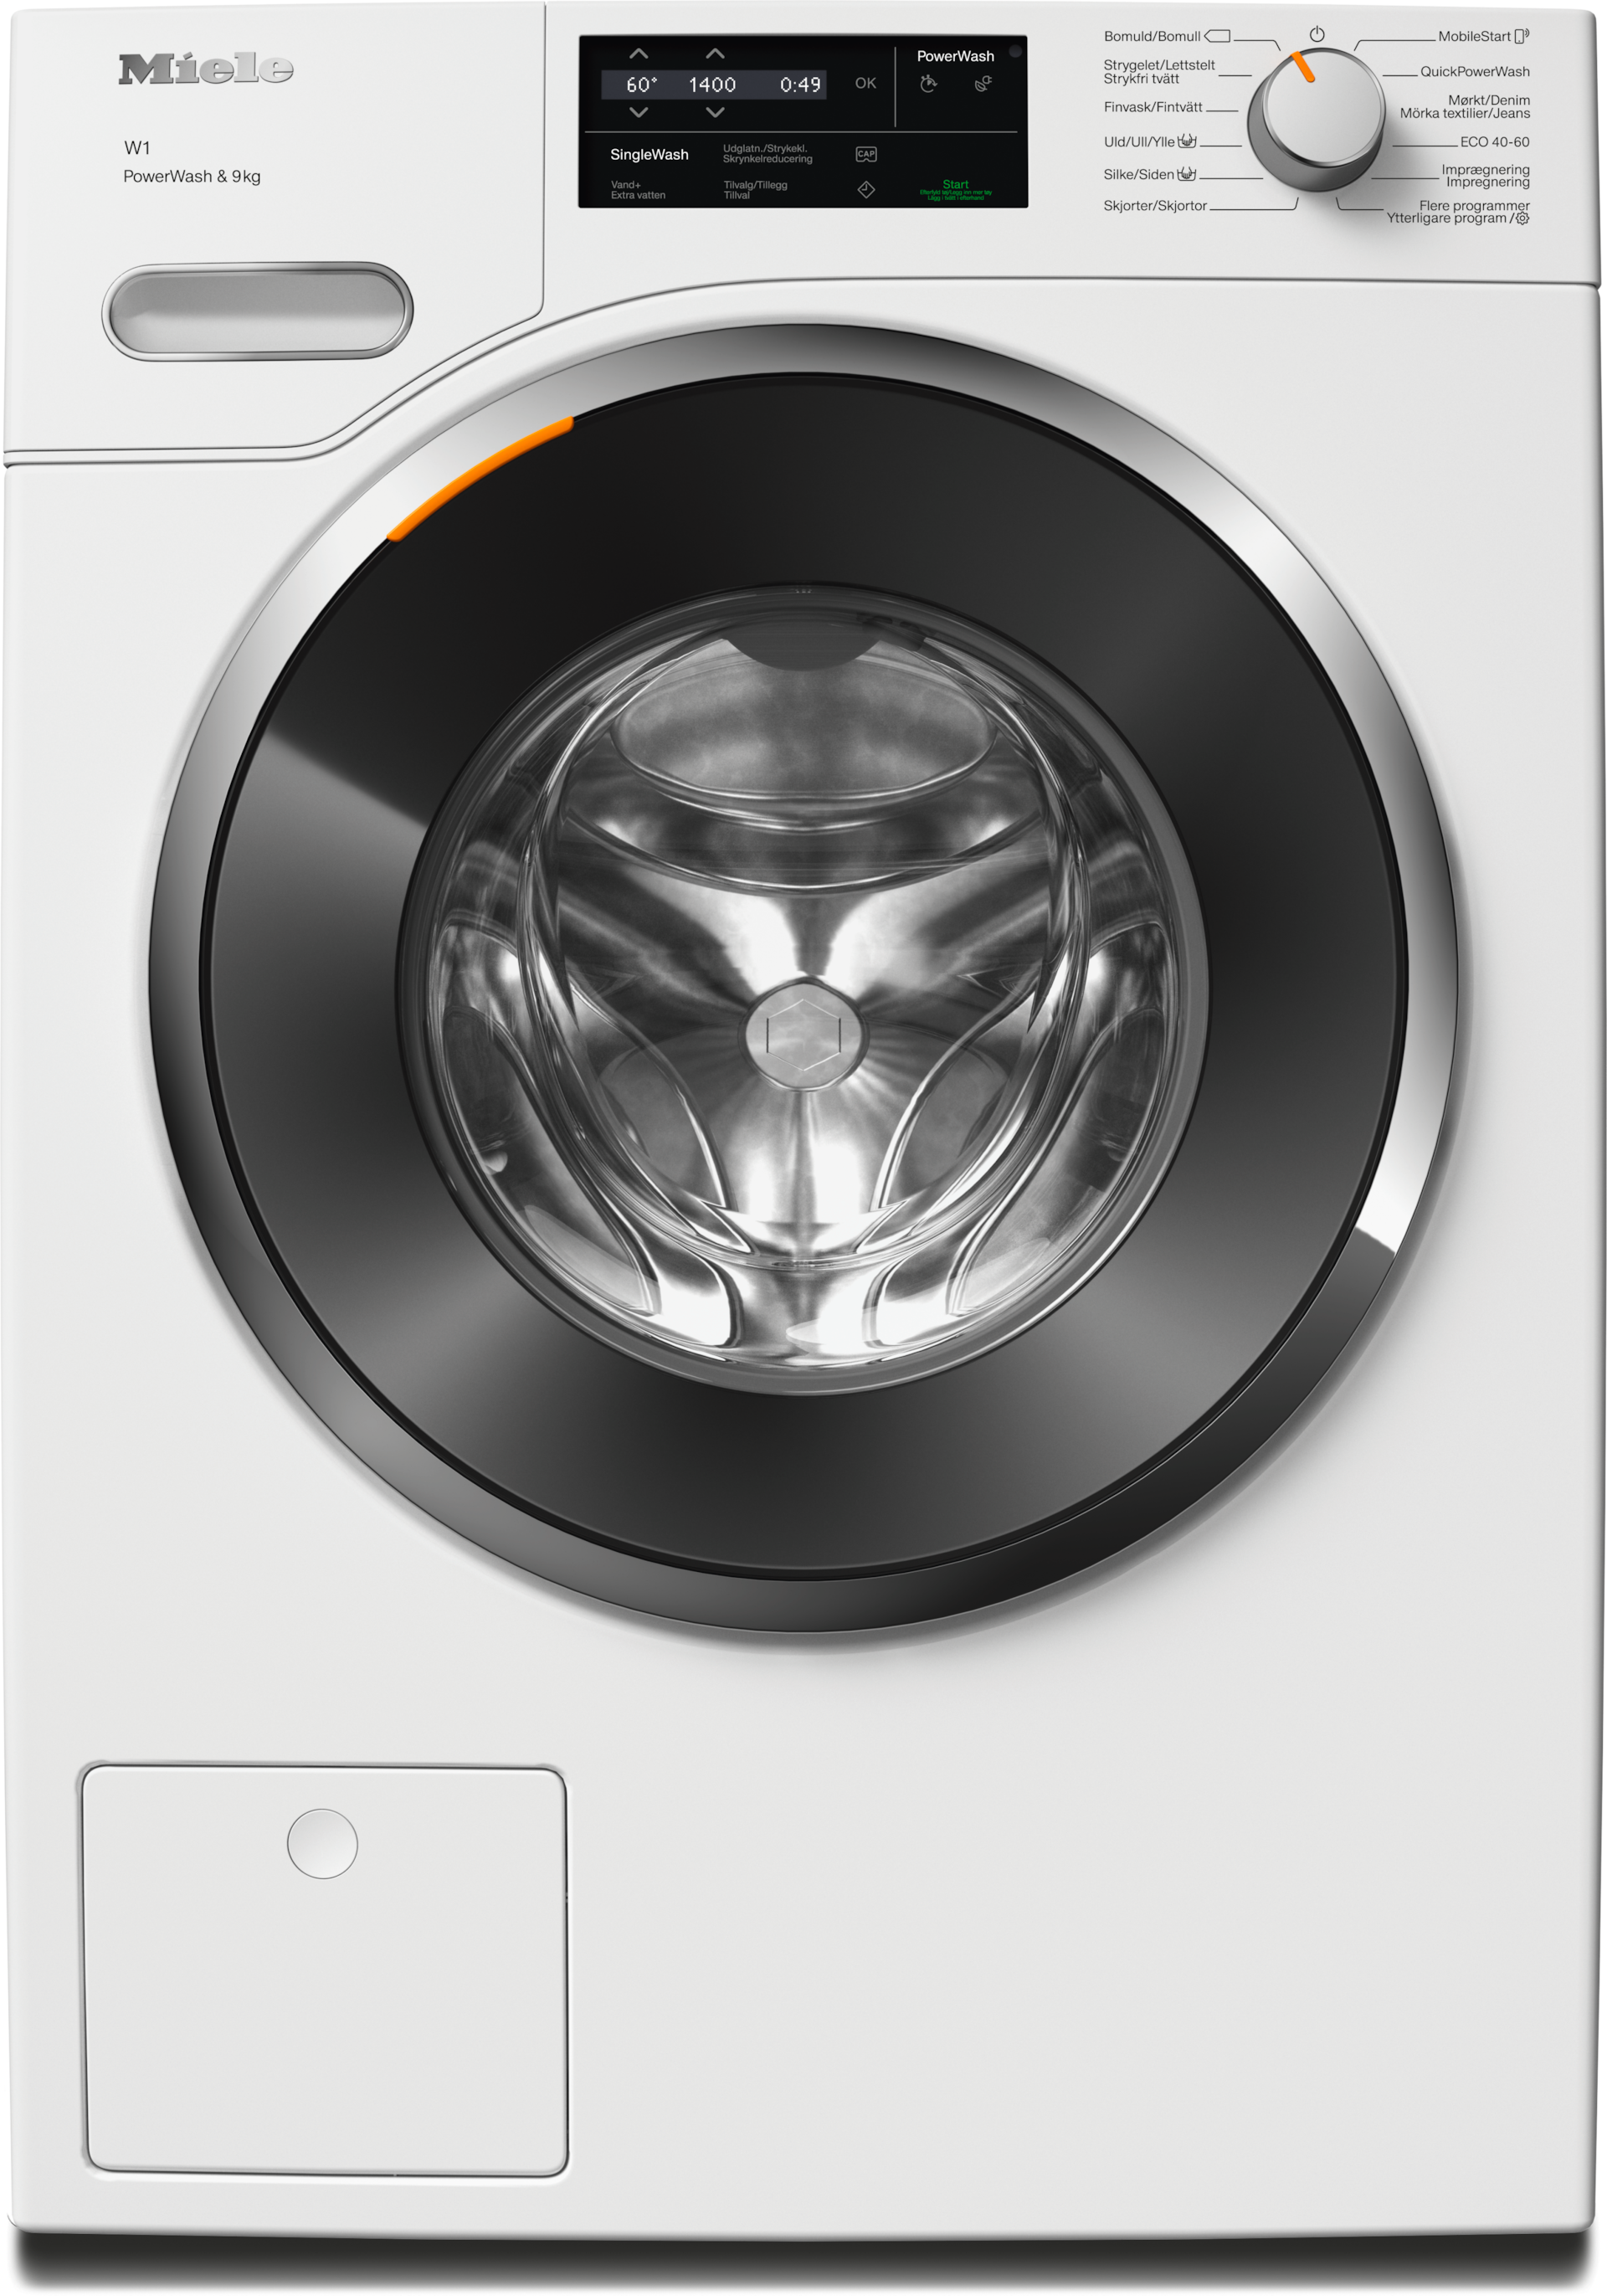 Vaskemaskiner - WWG360 WCS PWash&9kg Lotushvit - 1